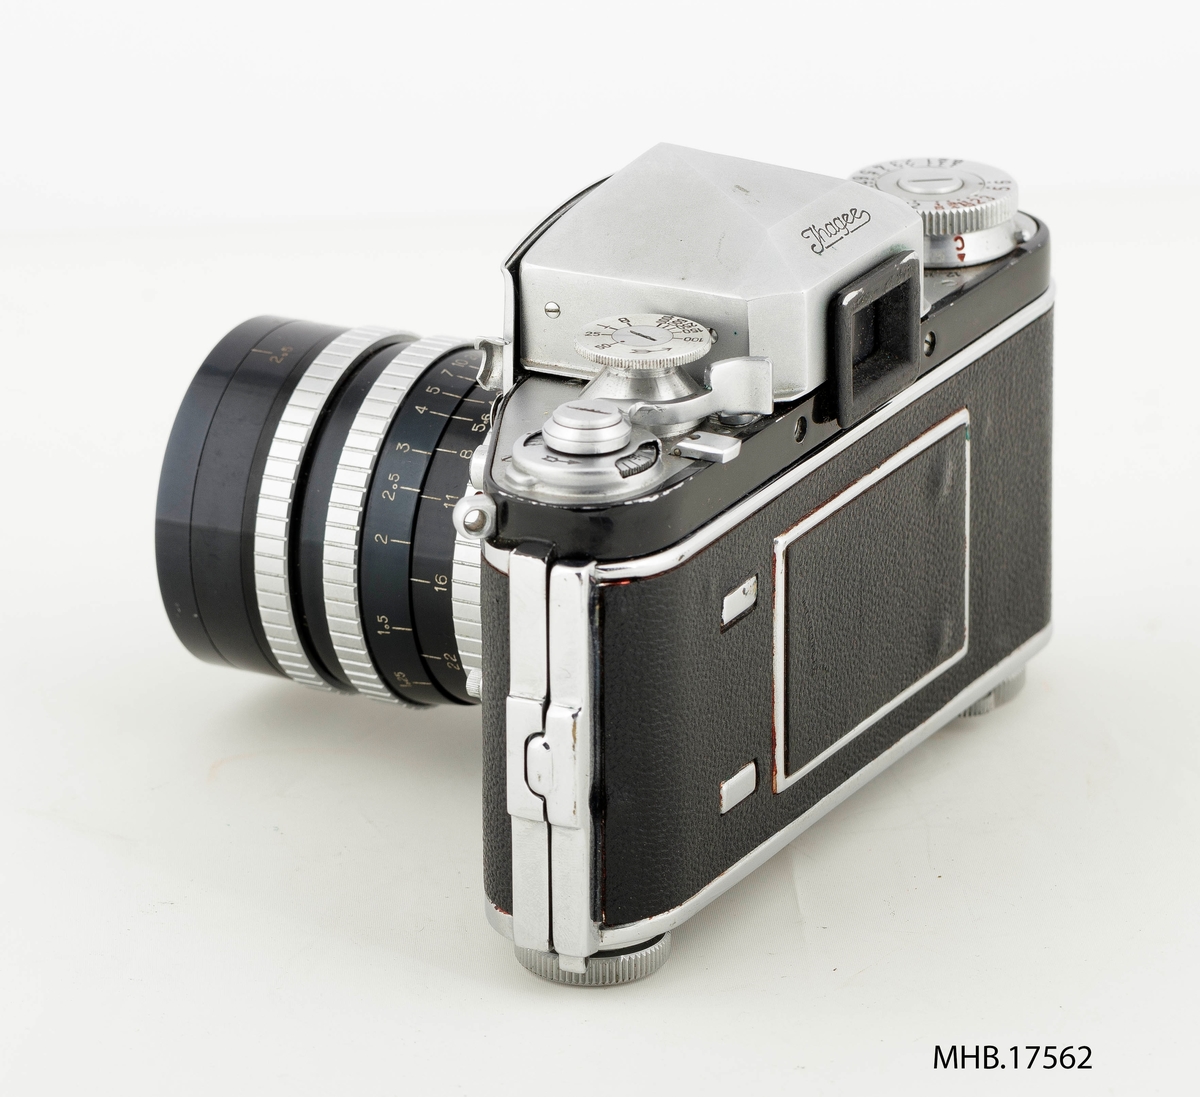 Fotoapparat Exakta Varex VX (filmrull 35 mm) med etui og ekstra søker med etui. Retrofocus Type R1 No.462874 linse (made in France). Produksjonssted Dresden, Tyskland.